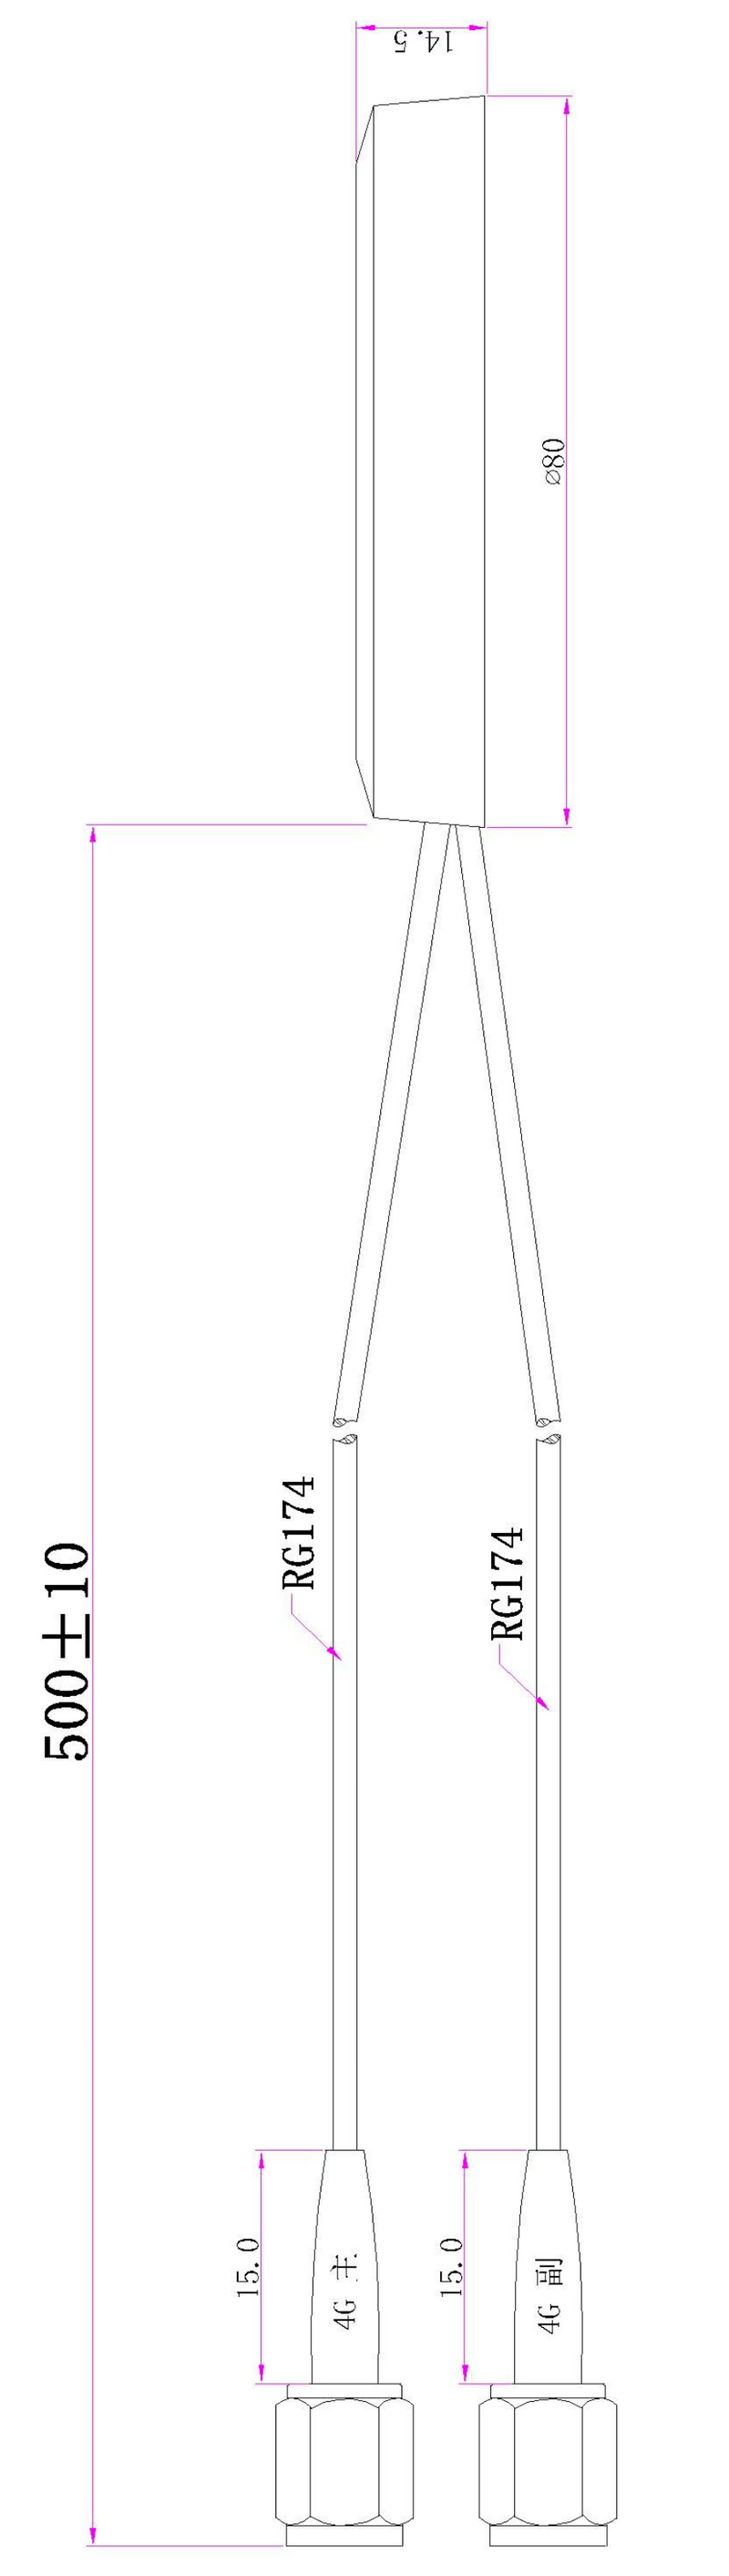 4G 蘑菇型天线，2 合 1（主天线 + 辅助天线），侧面 50 厘米电缆